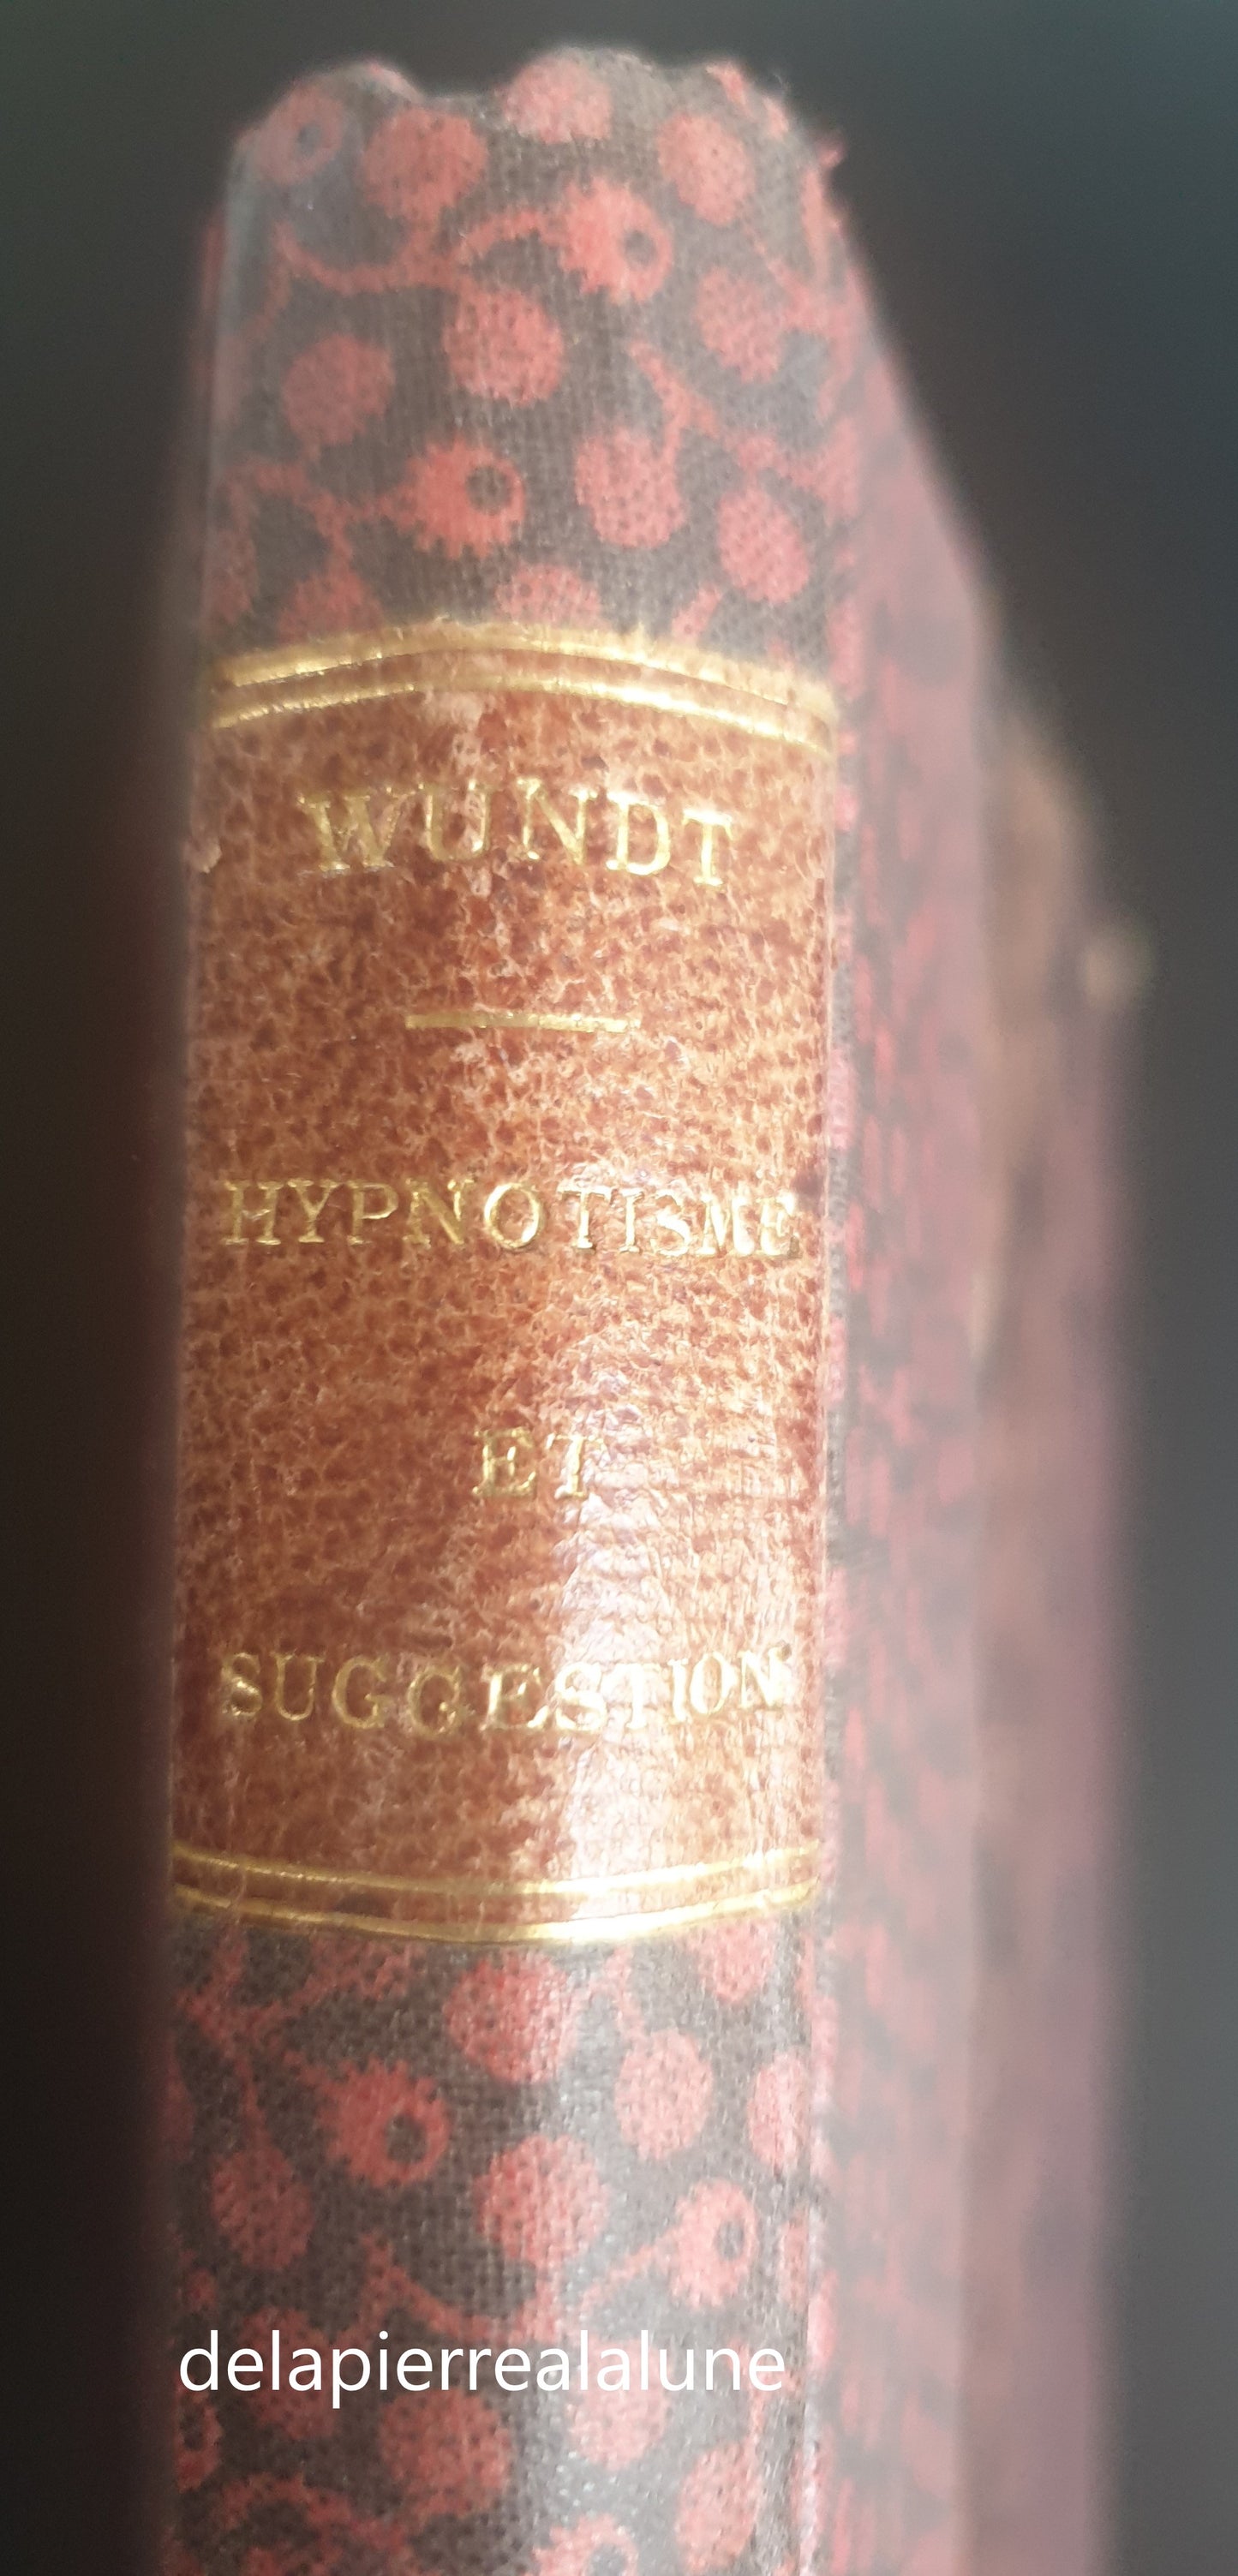 Livre -1893-HYPNOTISME & SUGGESTION ETUDE CRITIQUE PAR WUNDT -Livre Ref / Parapsychologie-Hypnose- new